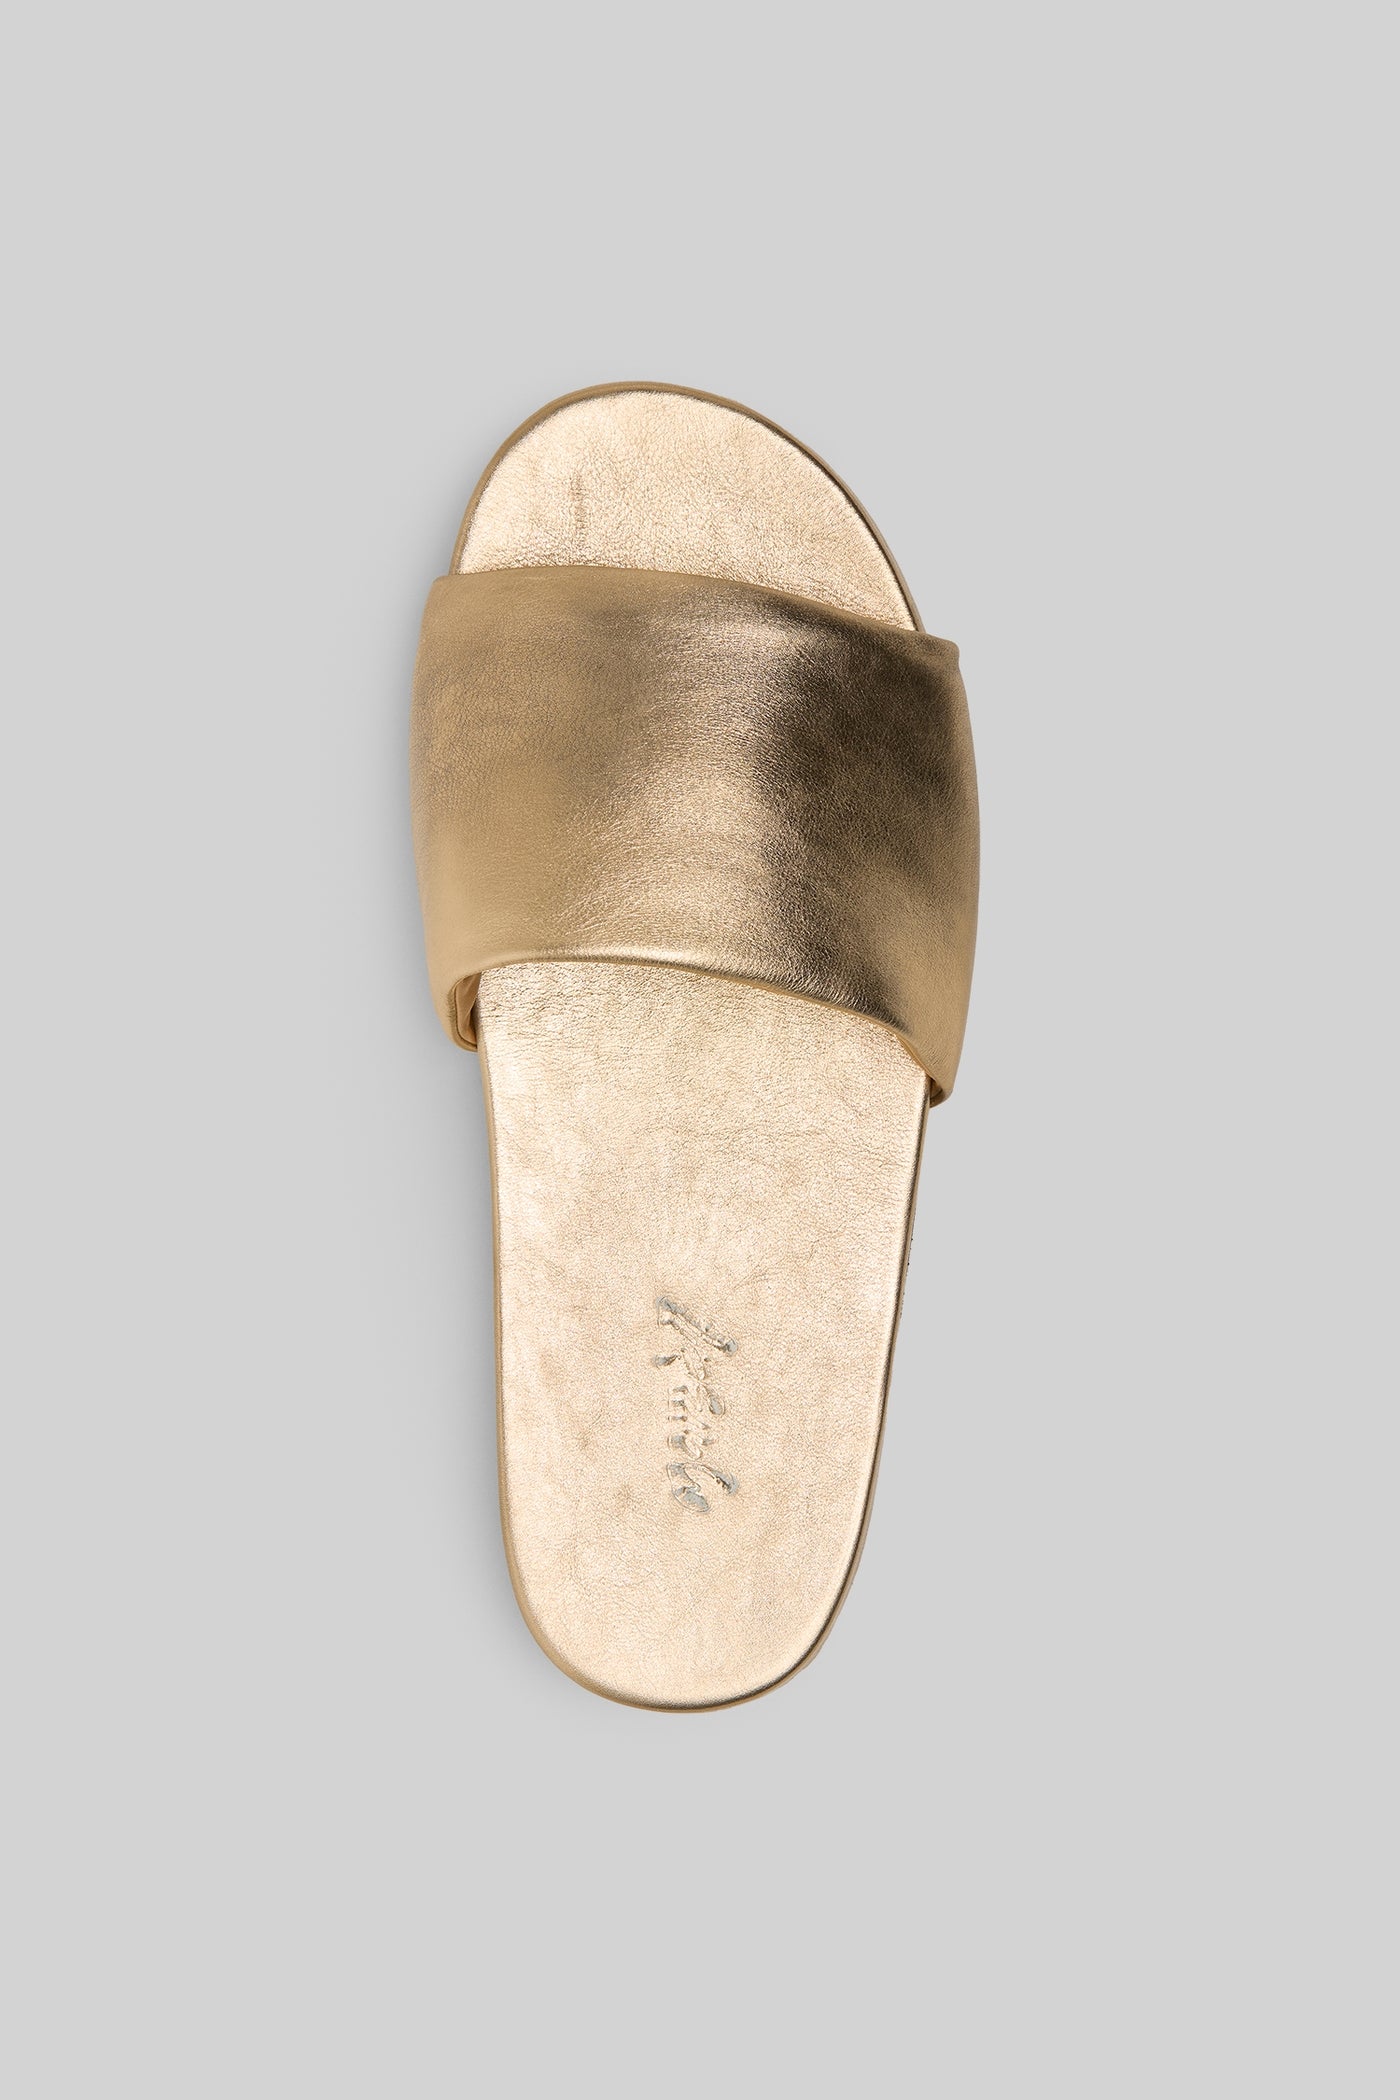 Spanciata Sandal